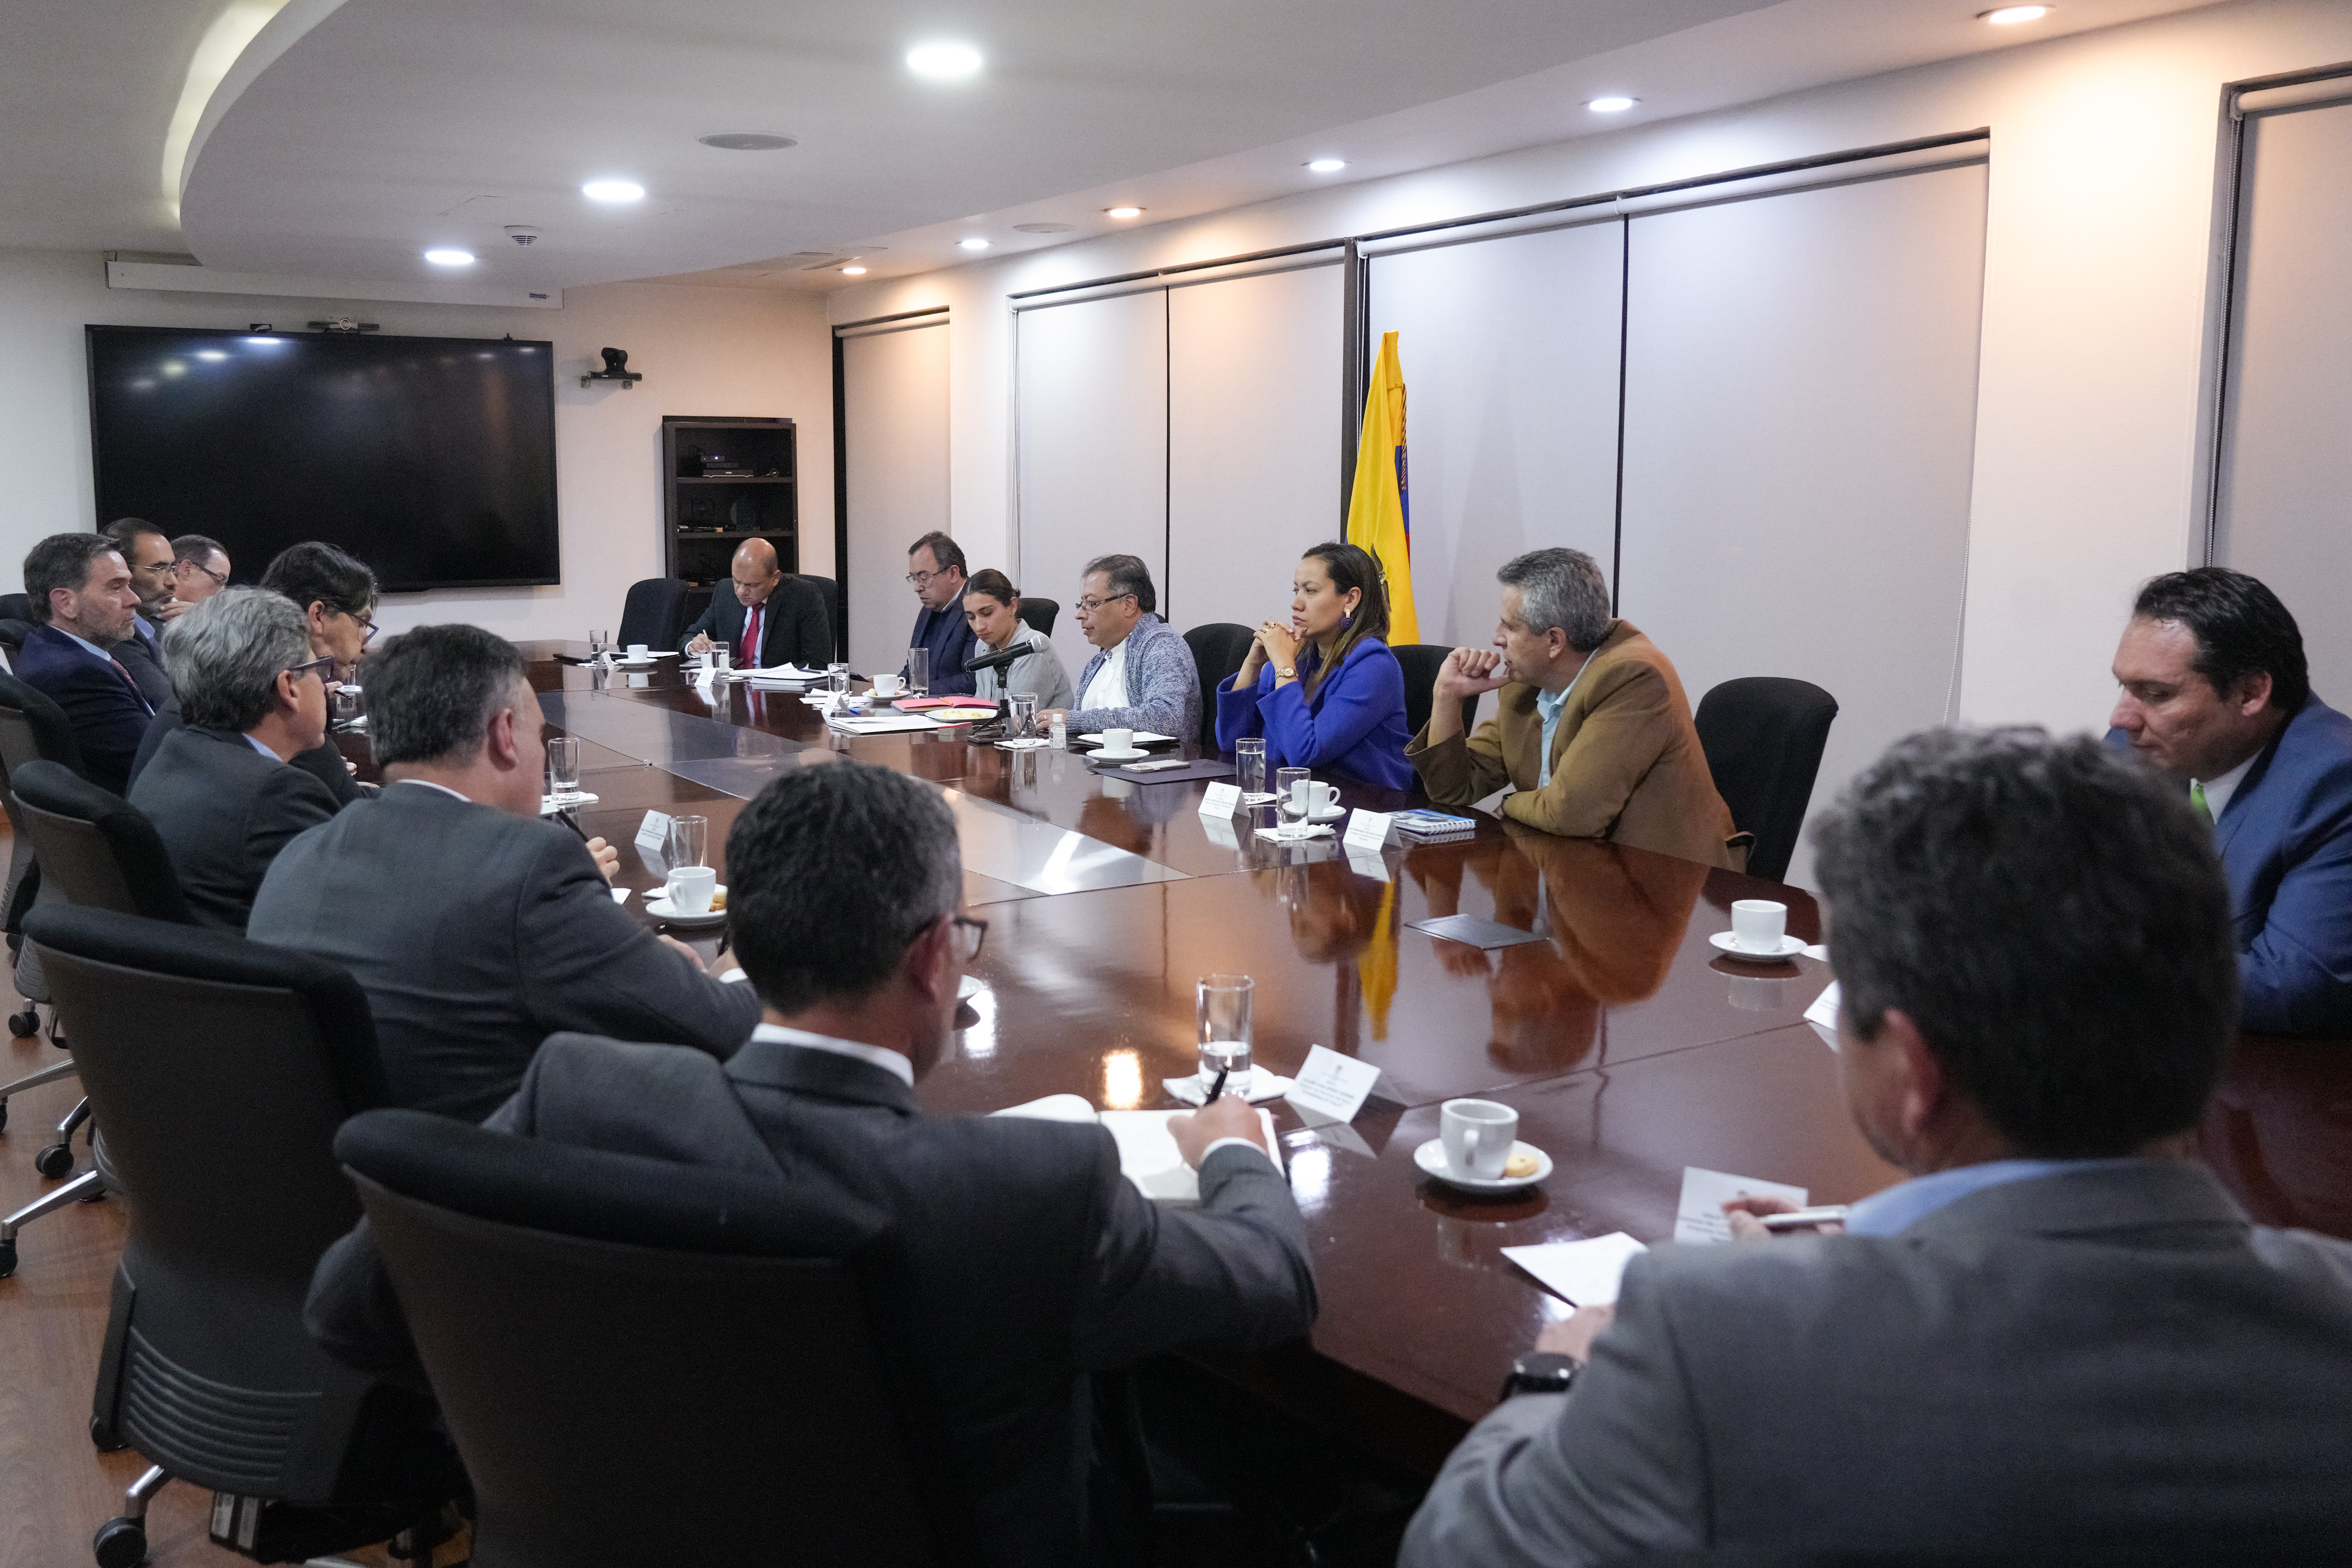 El encuentro se realizó en la noche del jueves 9 de febrero.
Presidencia (Andrea Puentes)